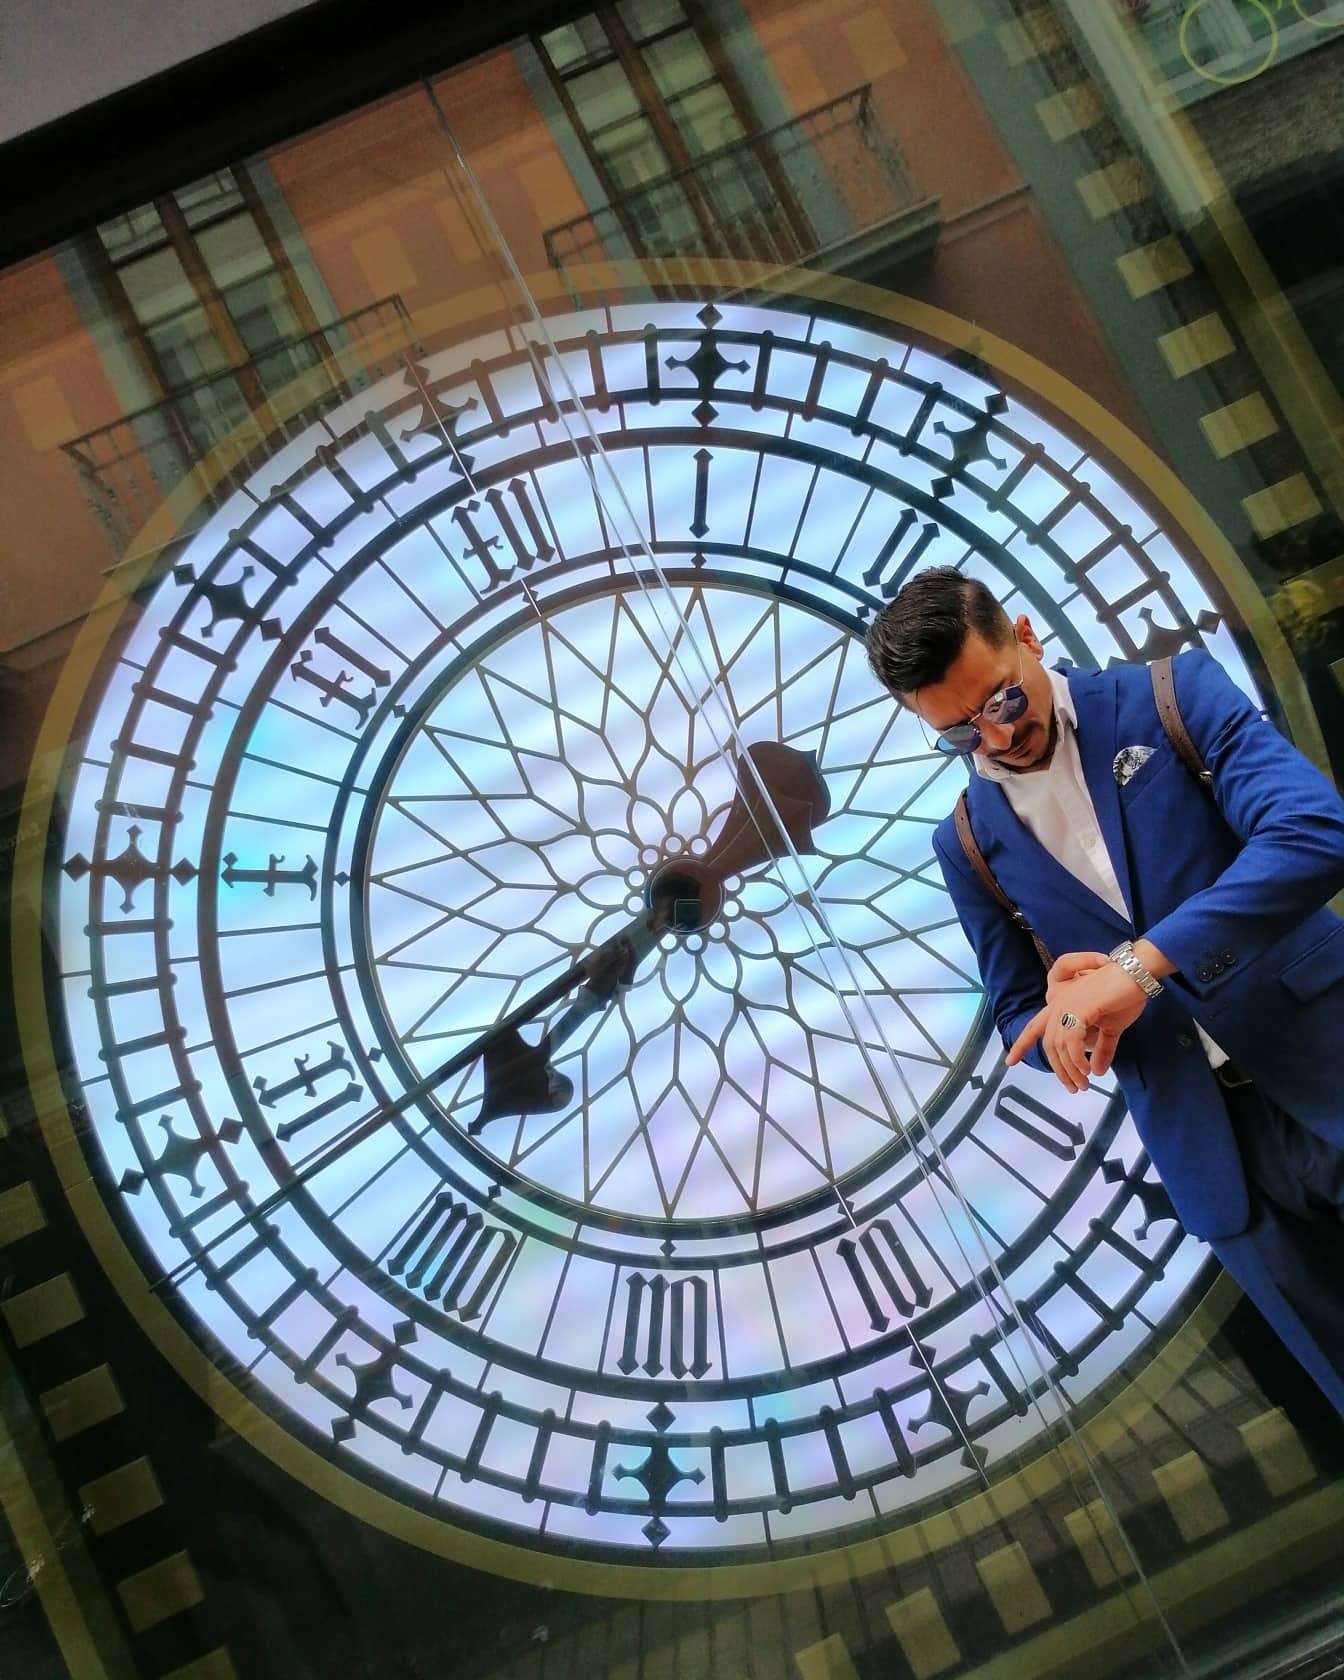 양복을 입은 사업가가 배경에 있는 창문에 큰 시계가 반사되어 손목시계를 보고 있다